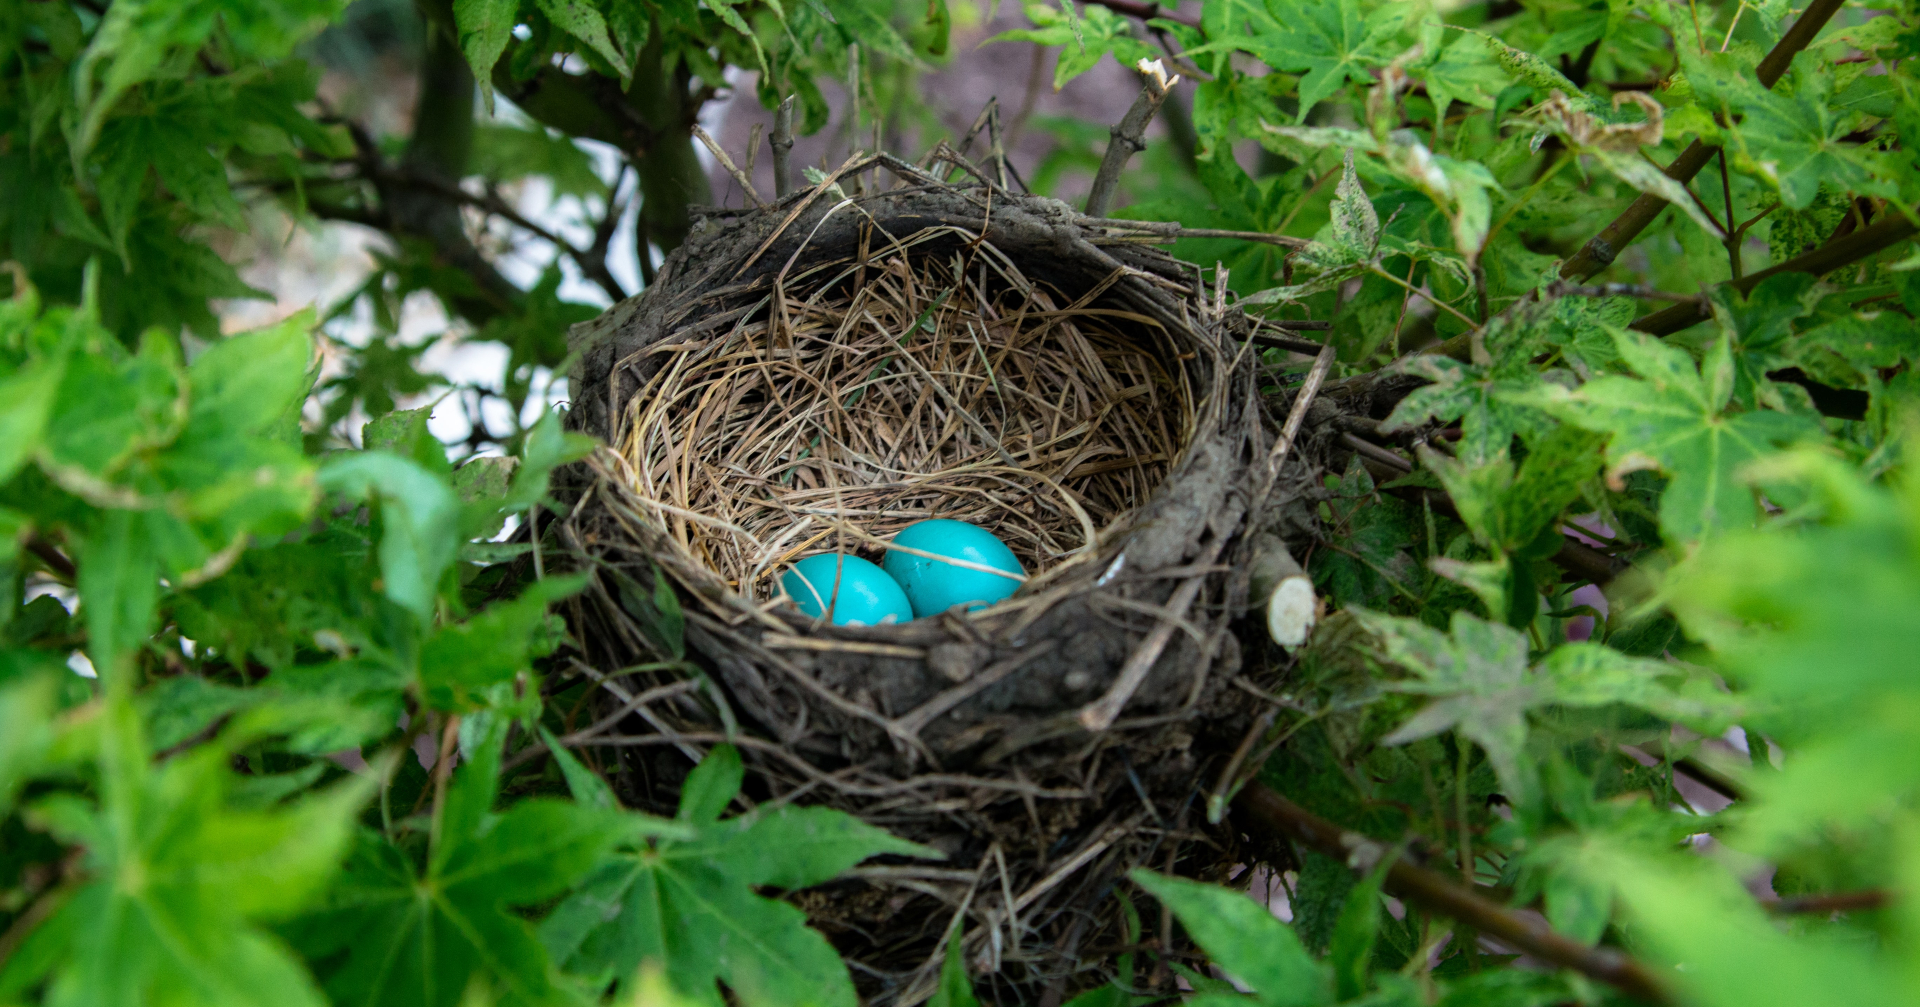 Photographie d'un nid d'oiseau contenant deux oeufs de couleur bleu